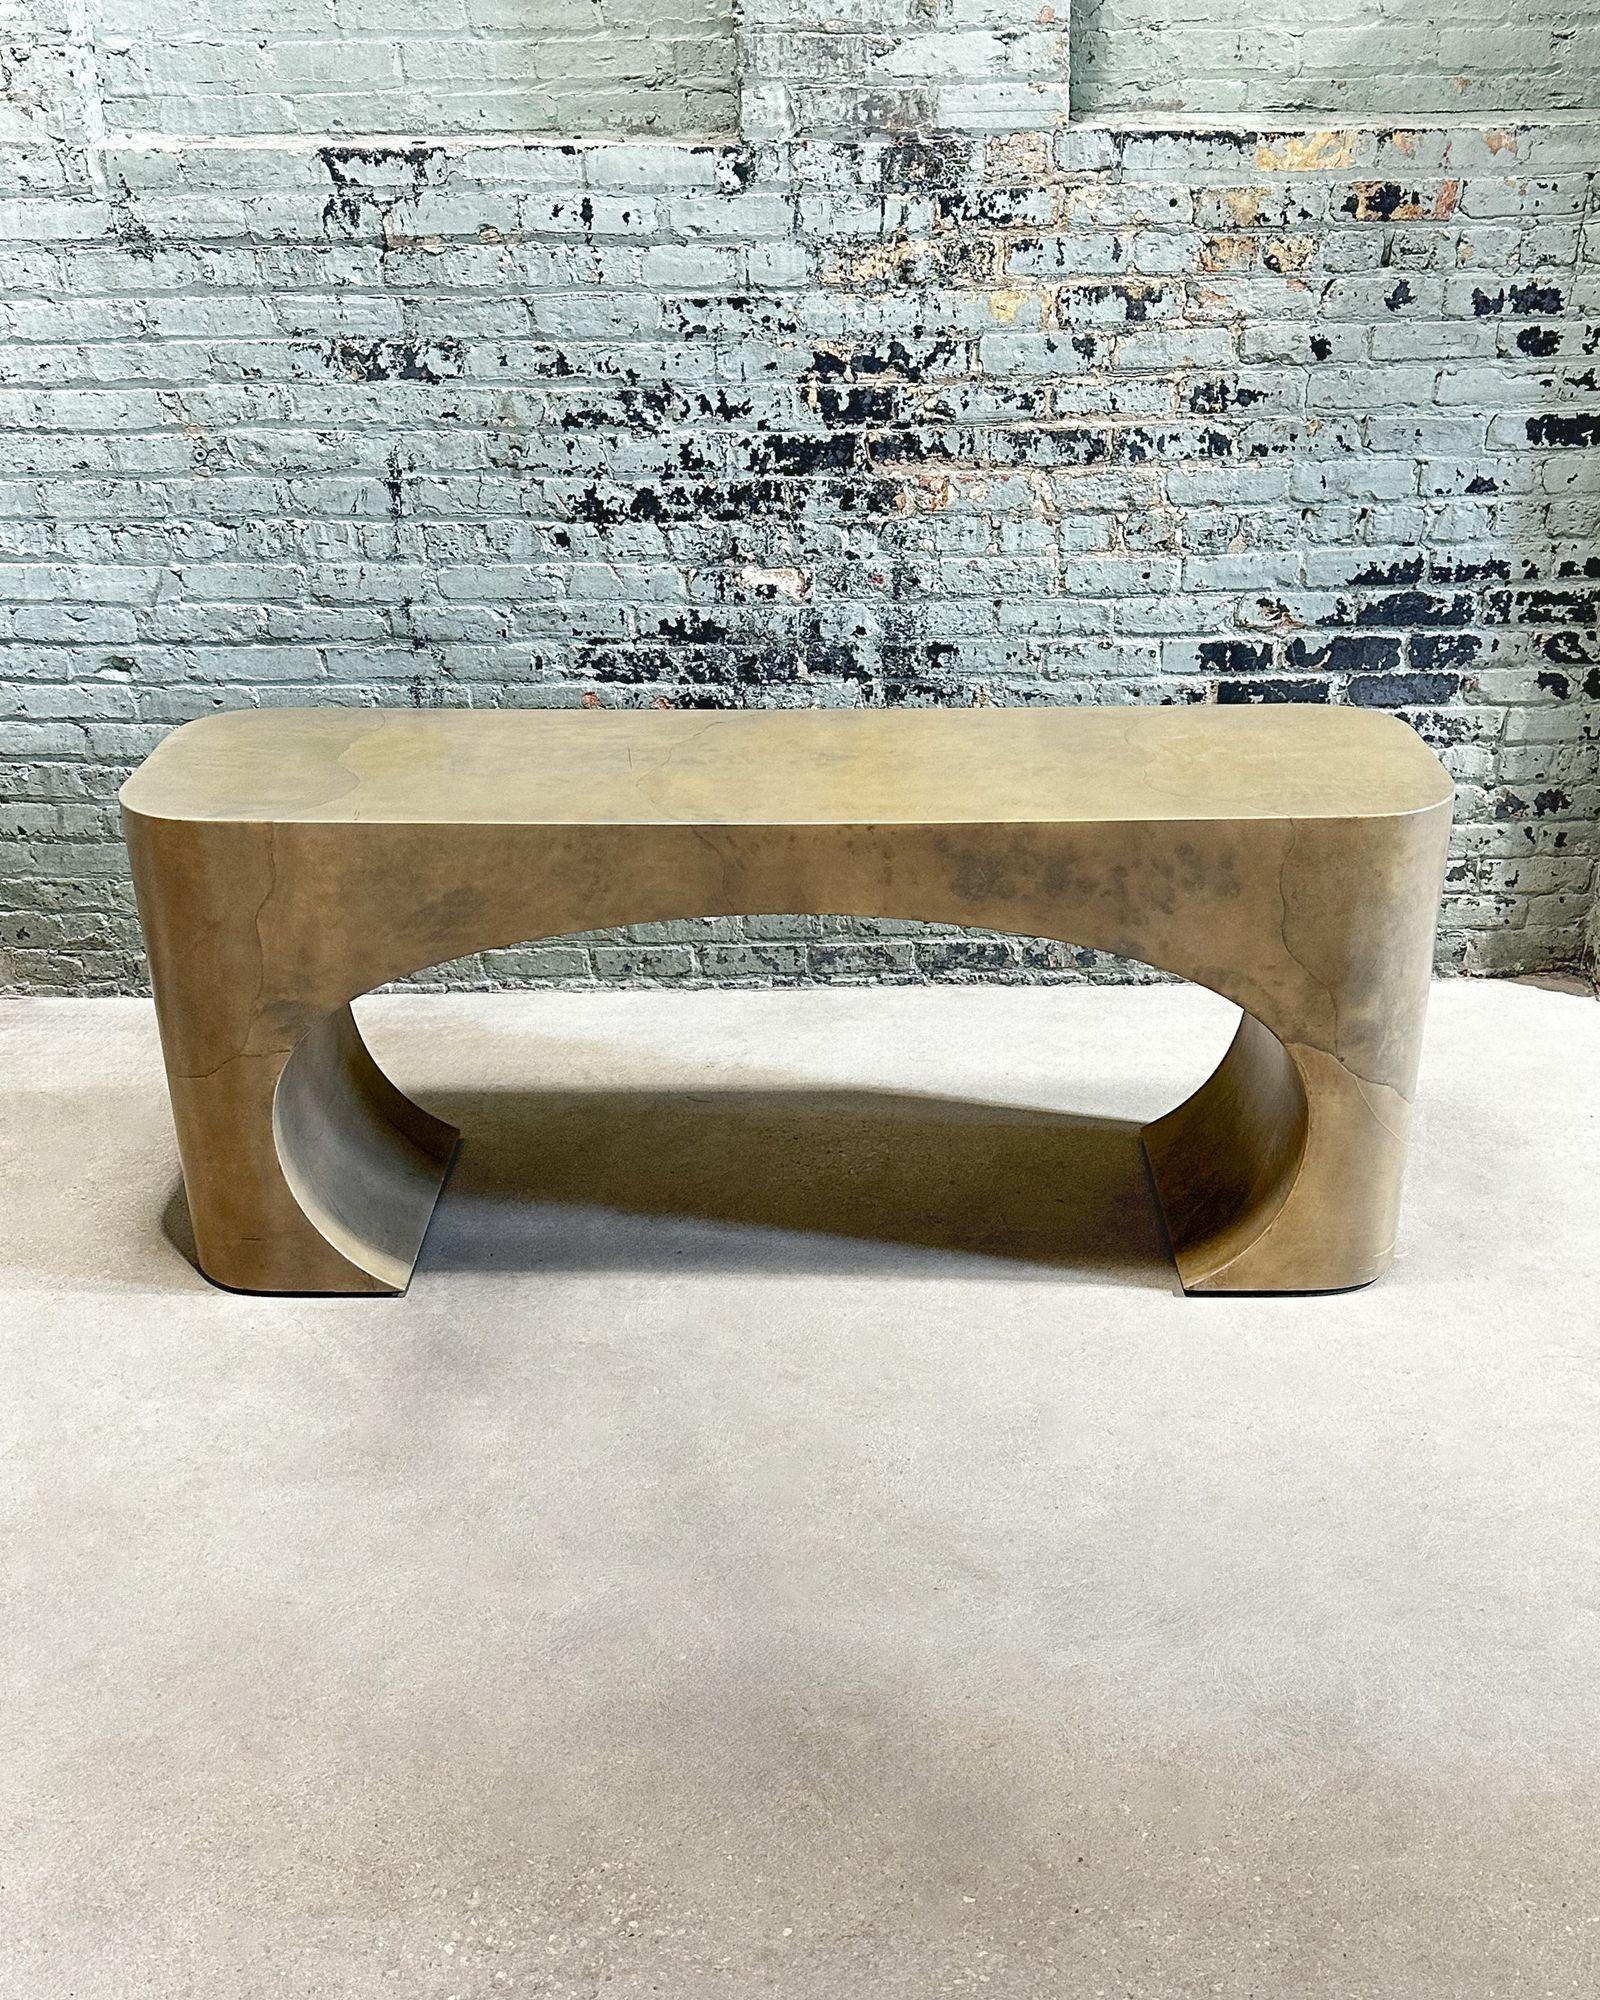 Table console sculpturale en peau de chèvre Style Karl Springer, 1970. Etat original.
Mesure 72